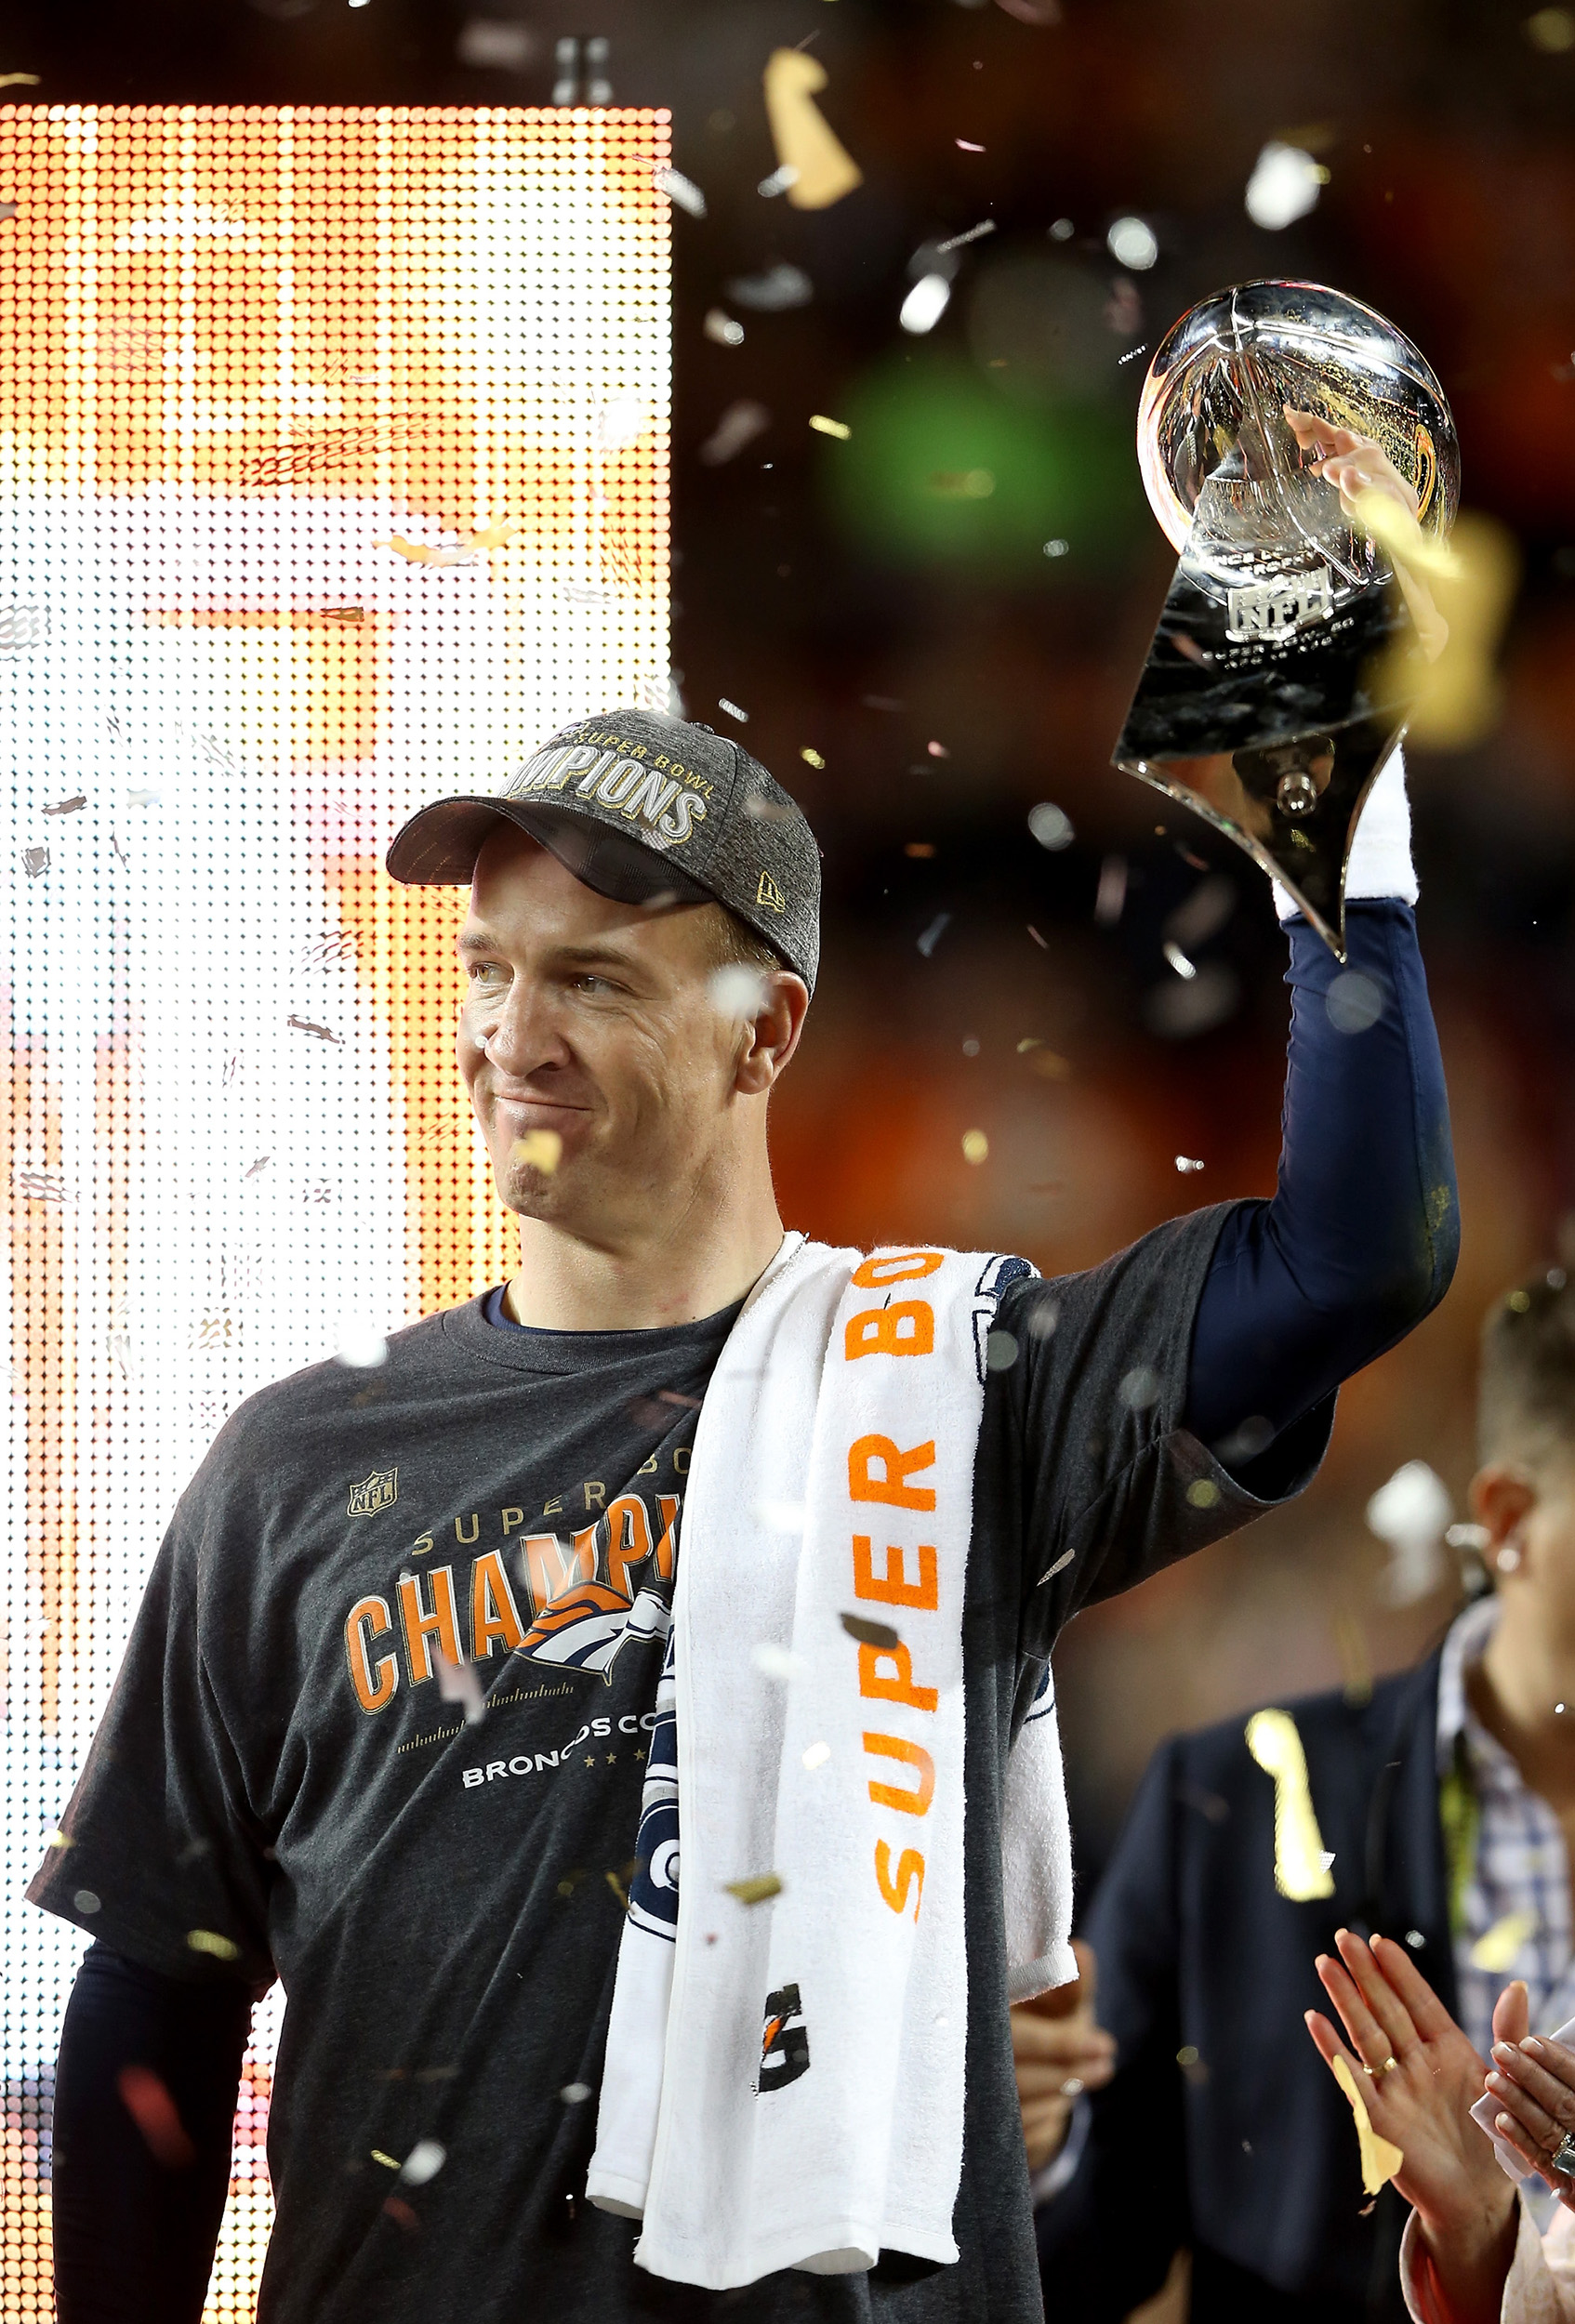 Peyton "The Sherriff" Manning